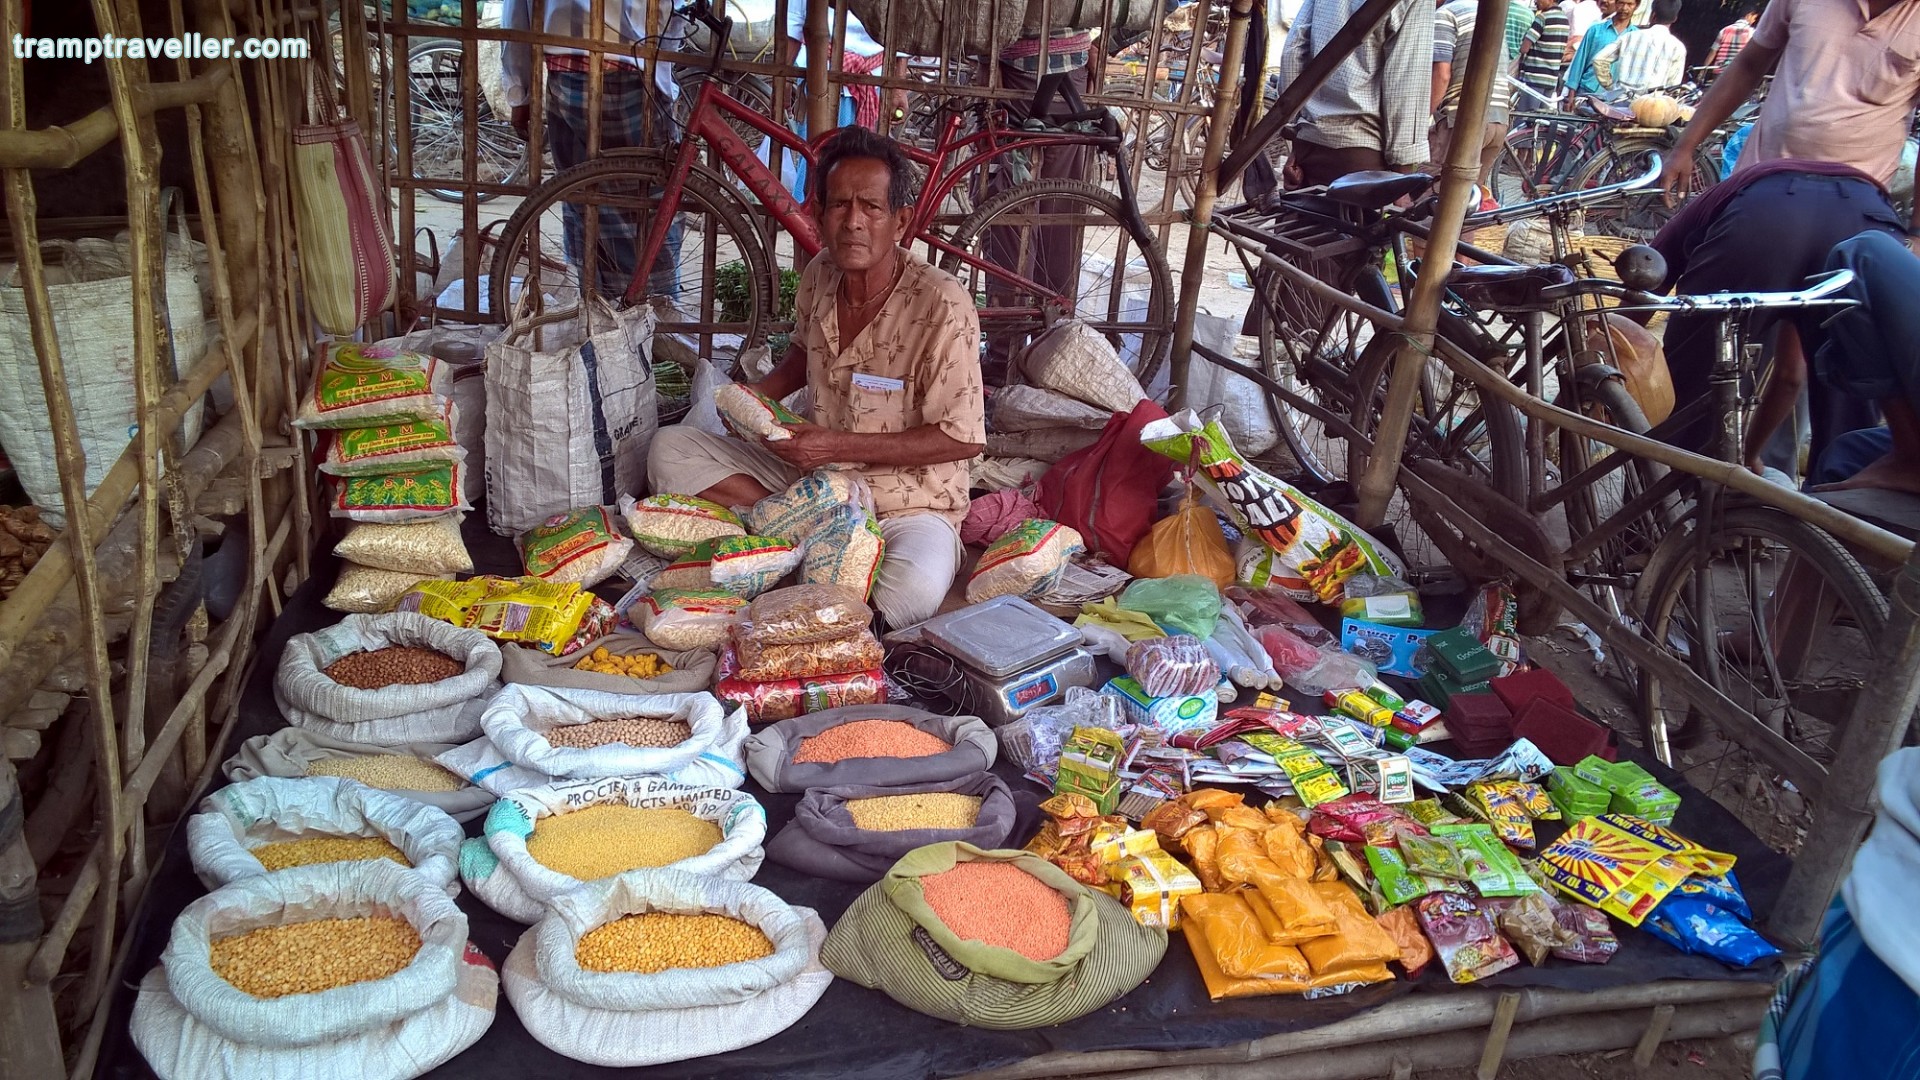 Basirpur Village Market View